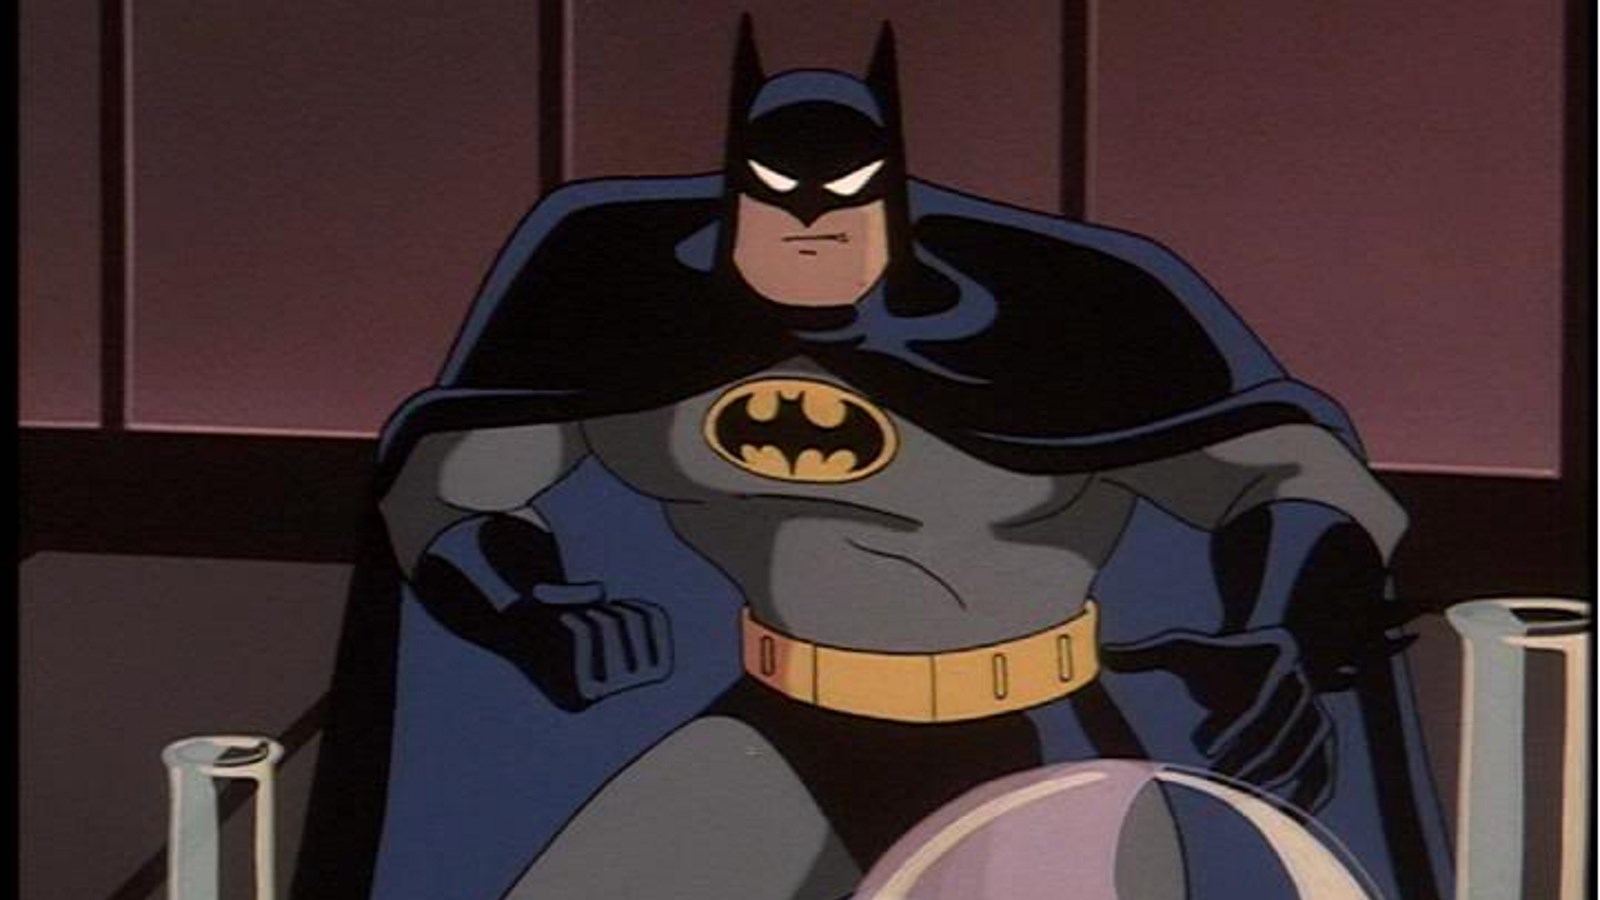  Batman The Animated Series estará disponible en HBO Max